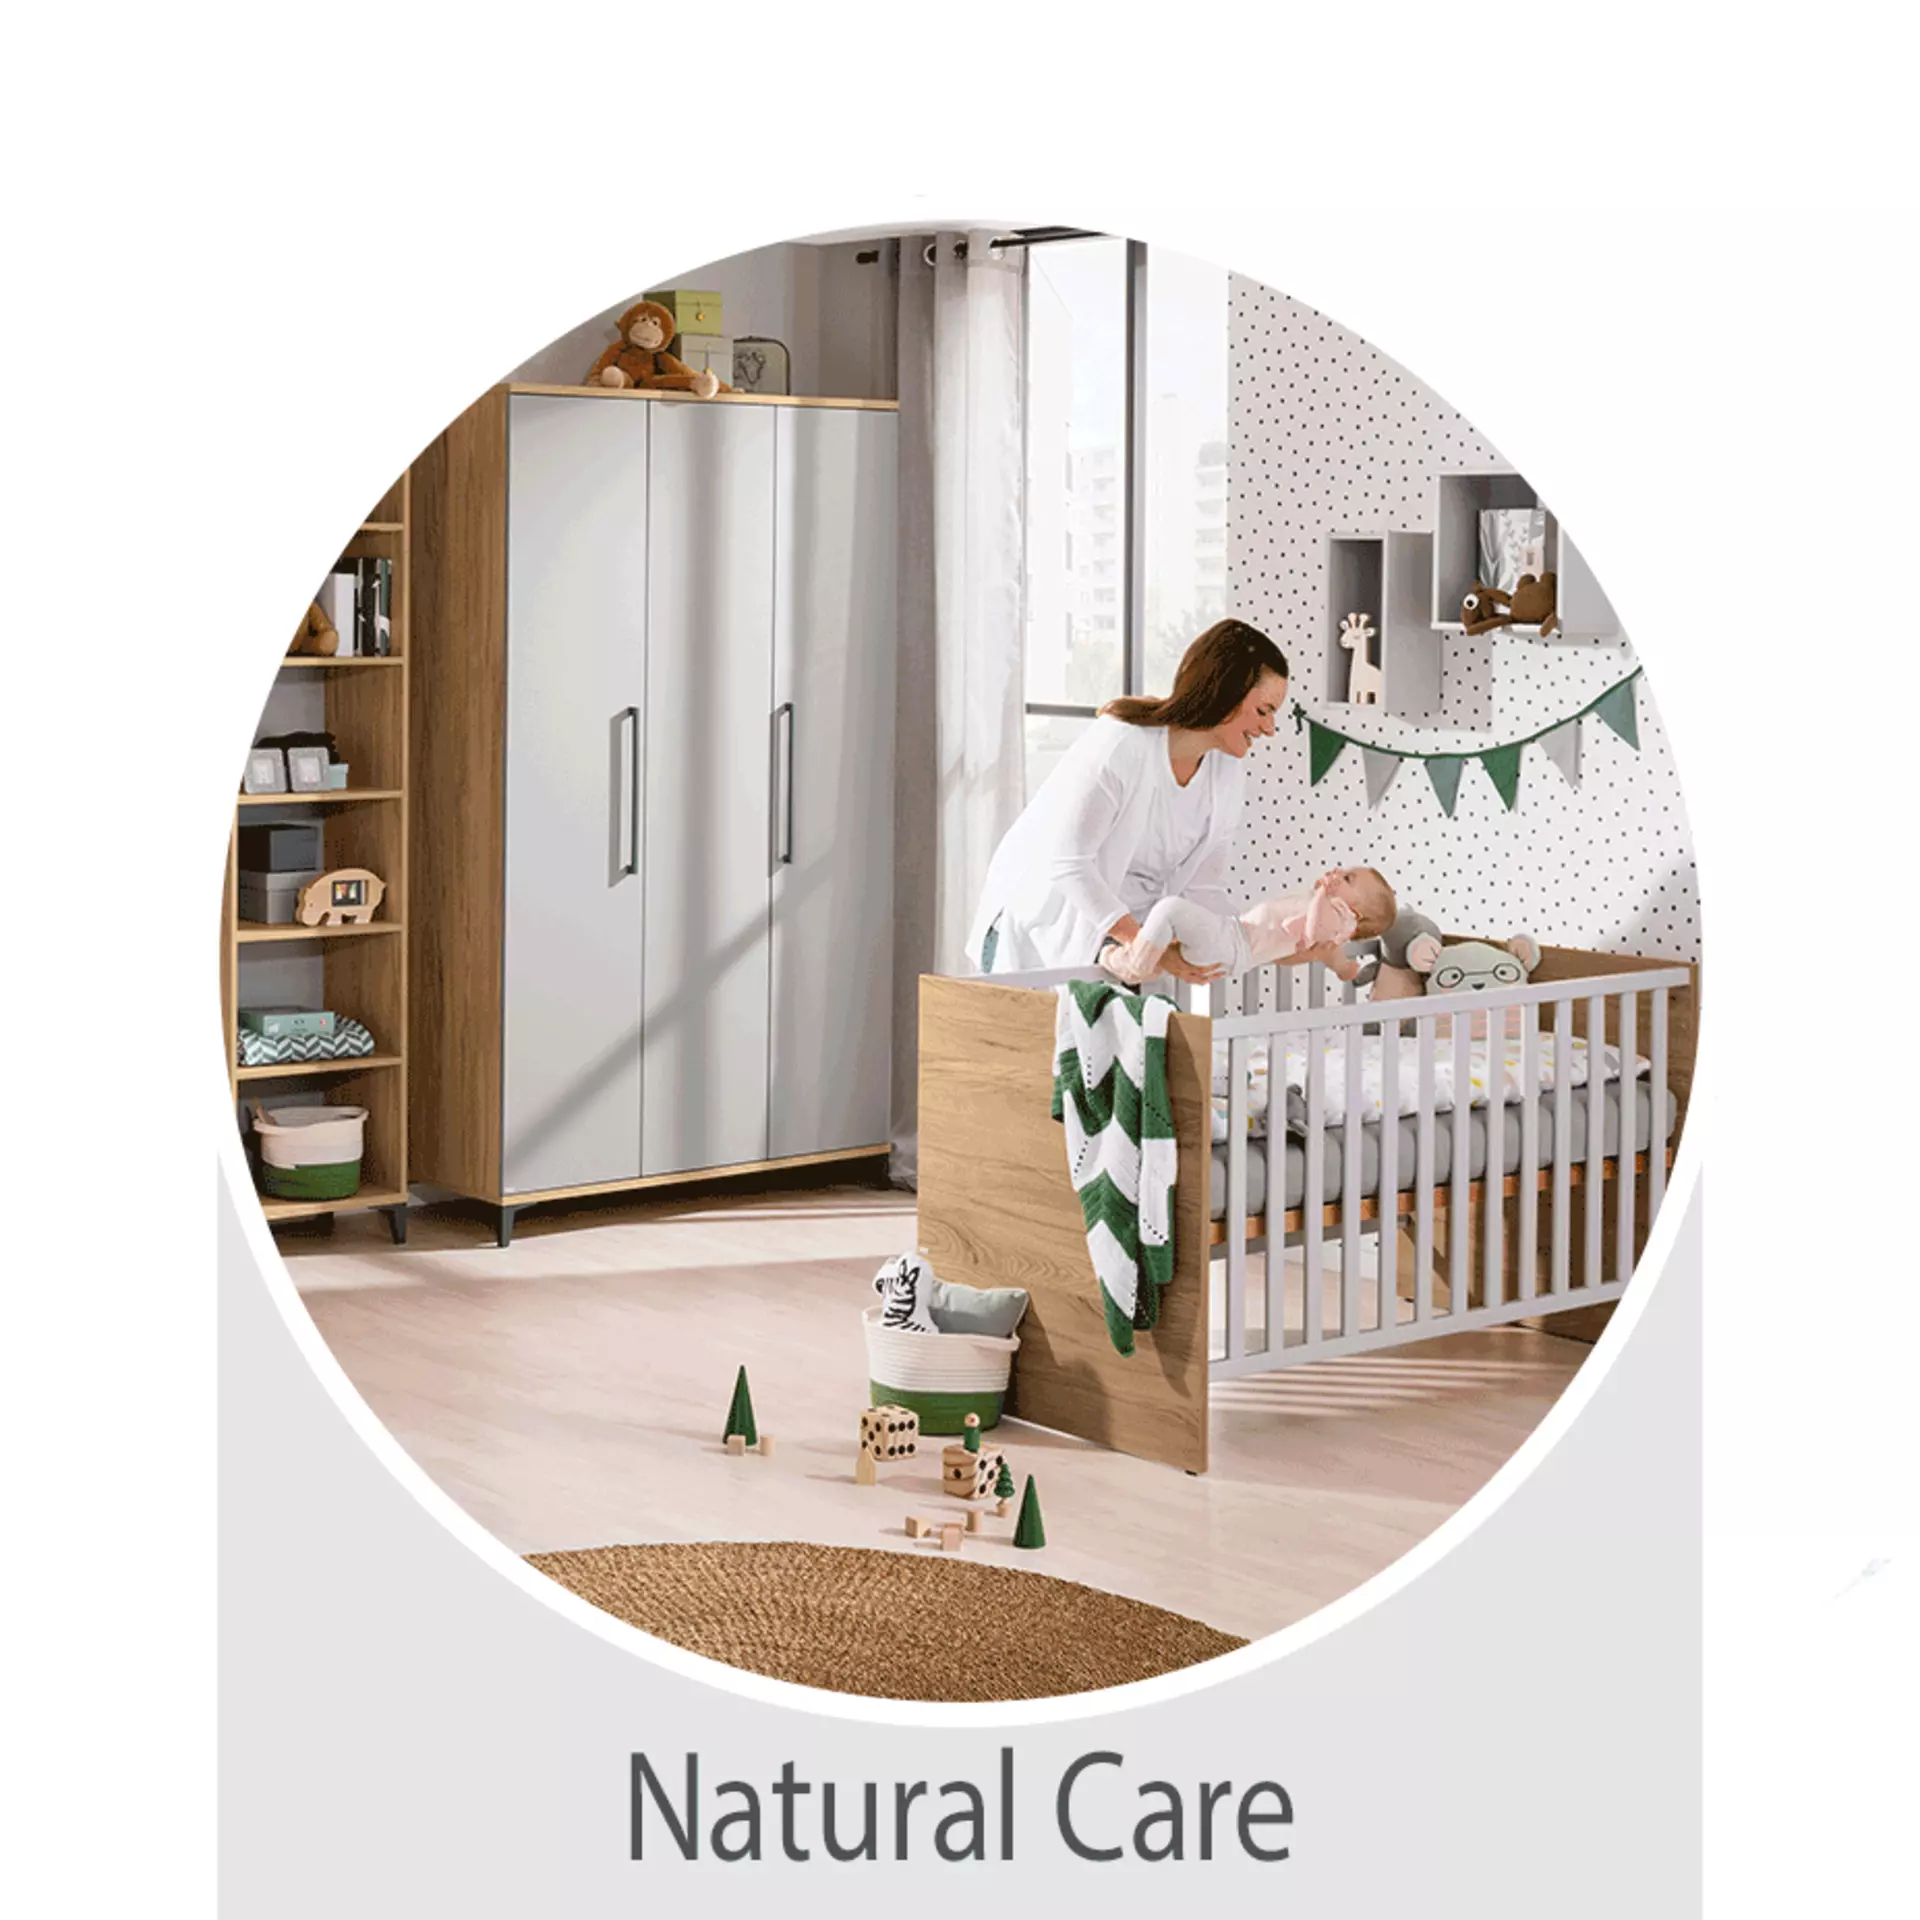 Der Wohntrend Natural Care: Babyzimmer natürlich einrichten -  jetzt bei Möbel Inhofer entdecken und inspirieren lassen